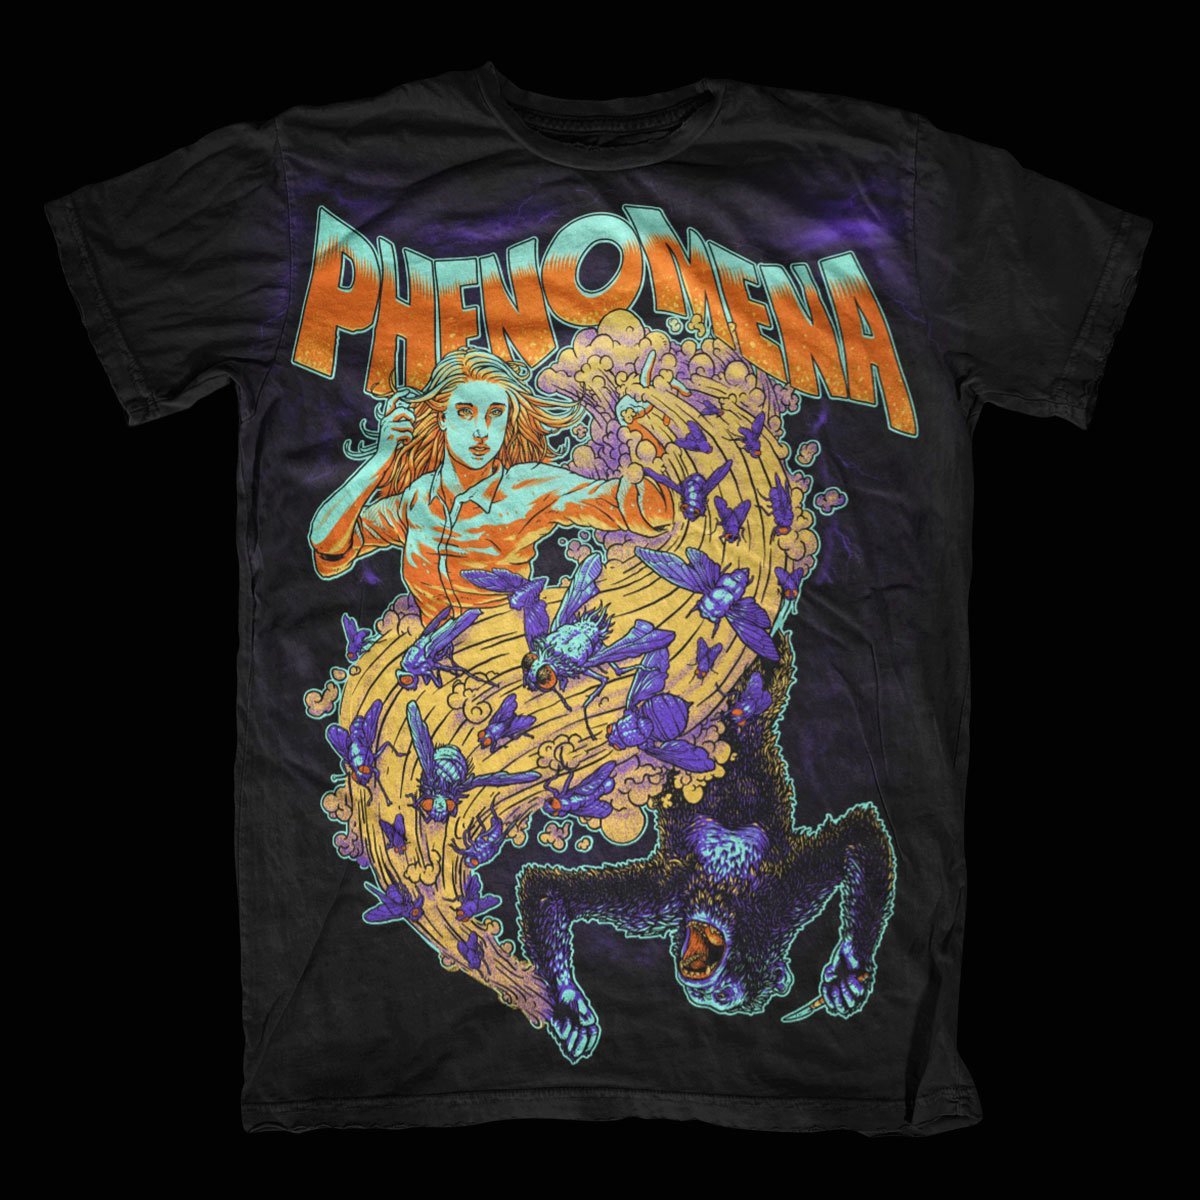 Phenomena – T-Shirt Design